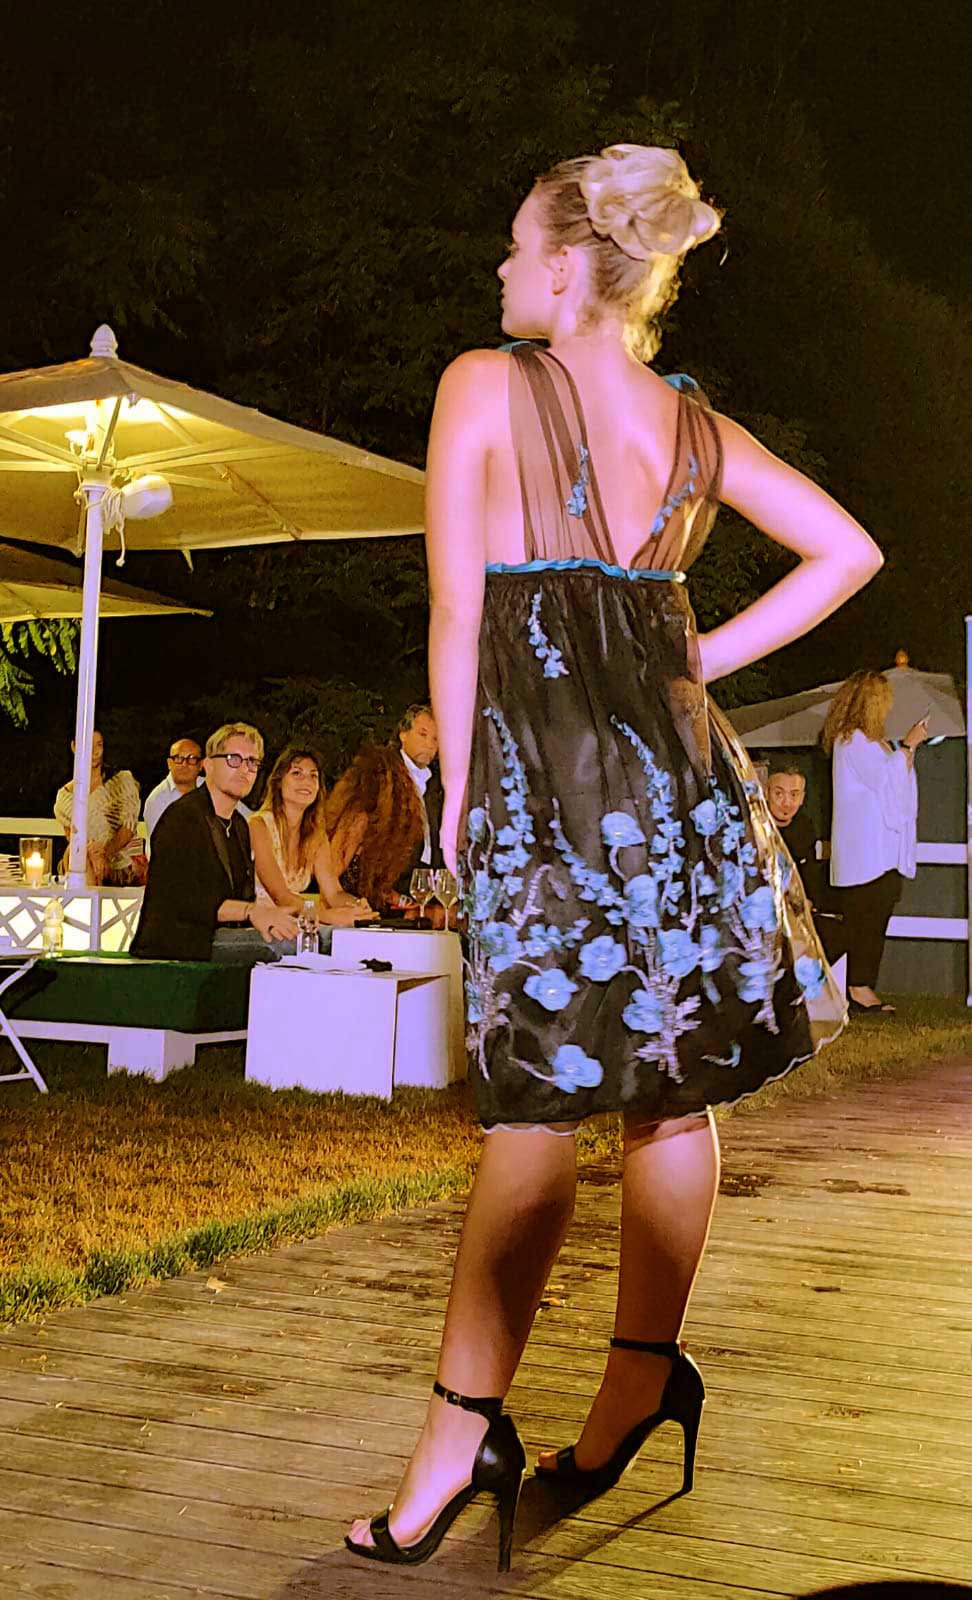 Sfilata abiti evento Elins Moda vestiti da cerimonia donna abbigliamento femminile a Roma foto ragazza in abito scuro con fiori in azzurro